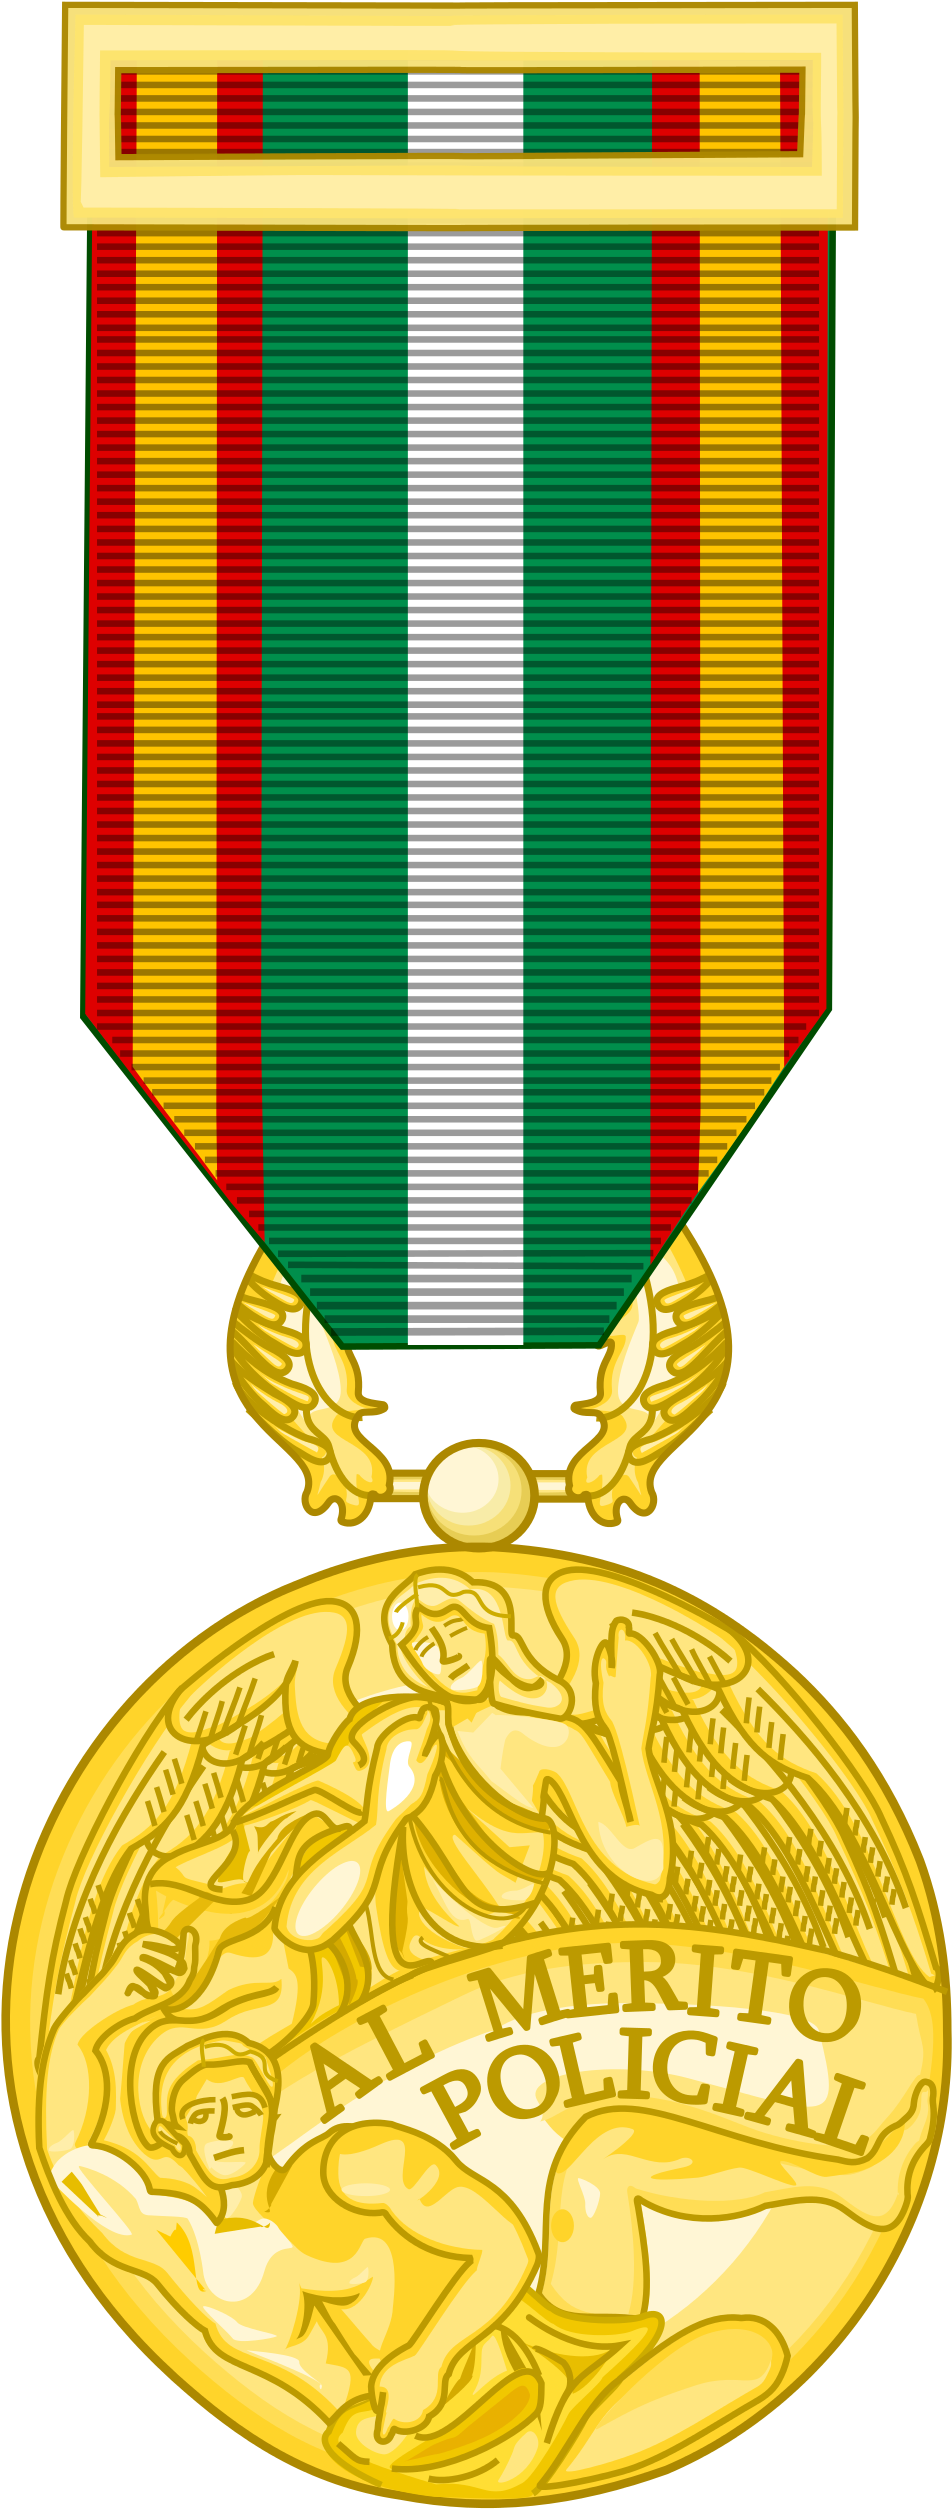 Open - Medalla De Oro De Andalucia (1000x2568)